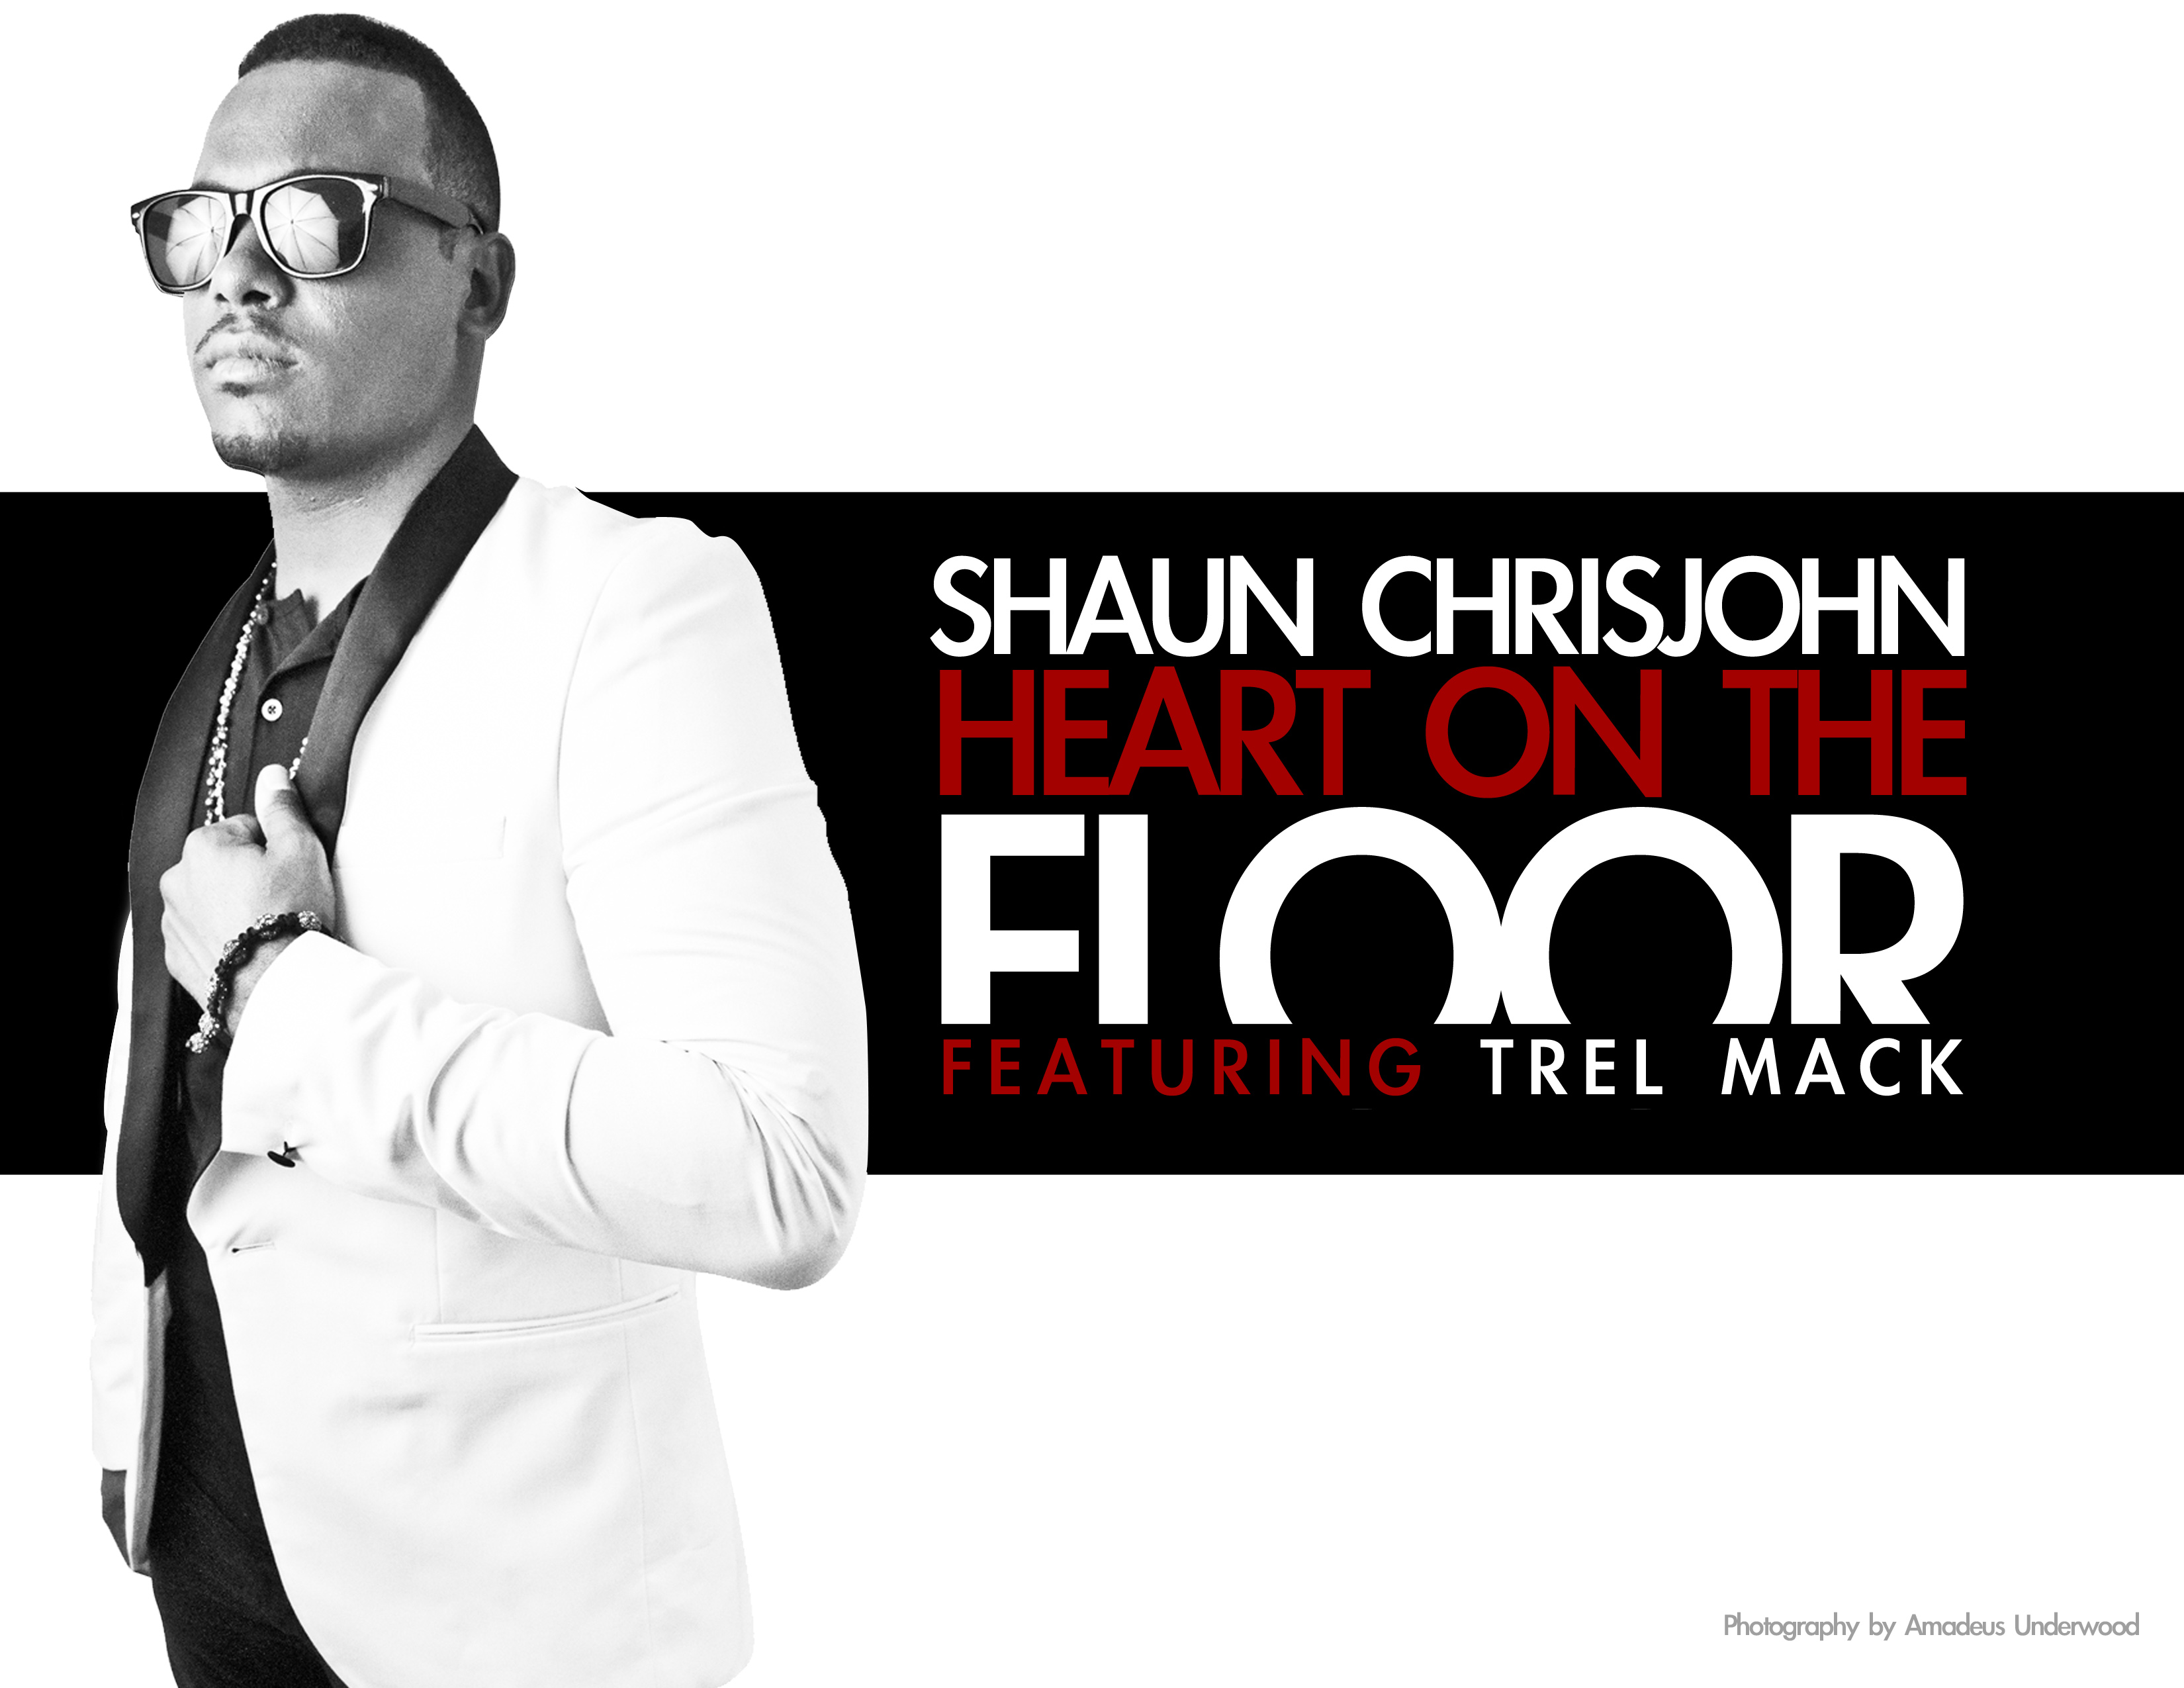 shaun-chris-john-heart-on-the-floor-featuring-trel-mack Shaun Chrisjohn (@shaunchrismusic) - Heart on The Floor Featuring Trel Mack  